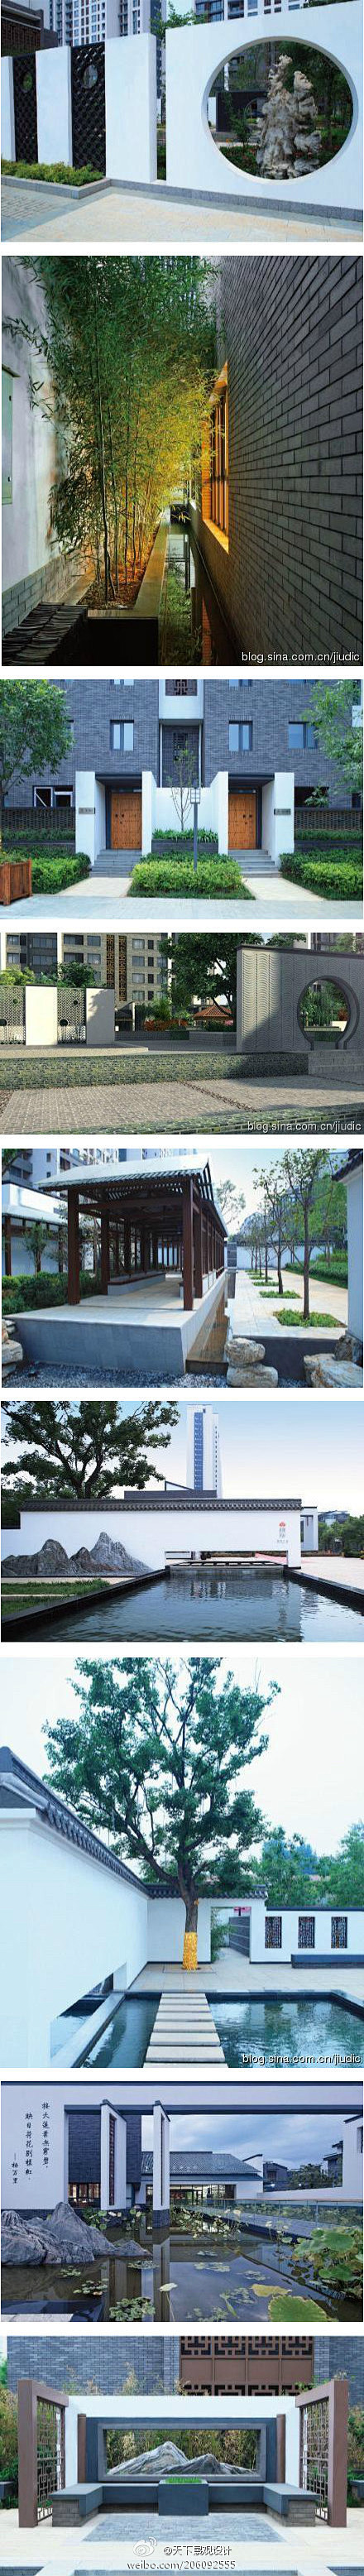 天津蓟县·曲院风荷新中式园林景观设计